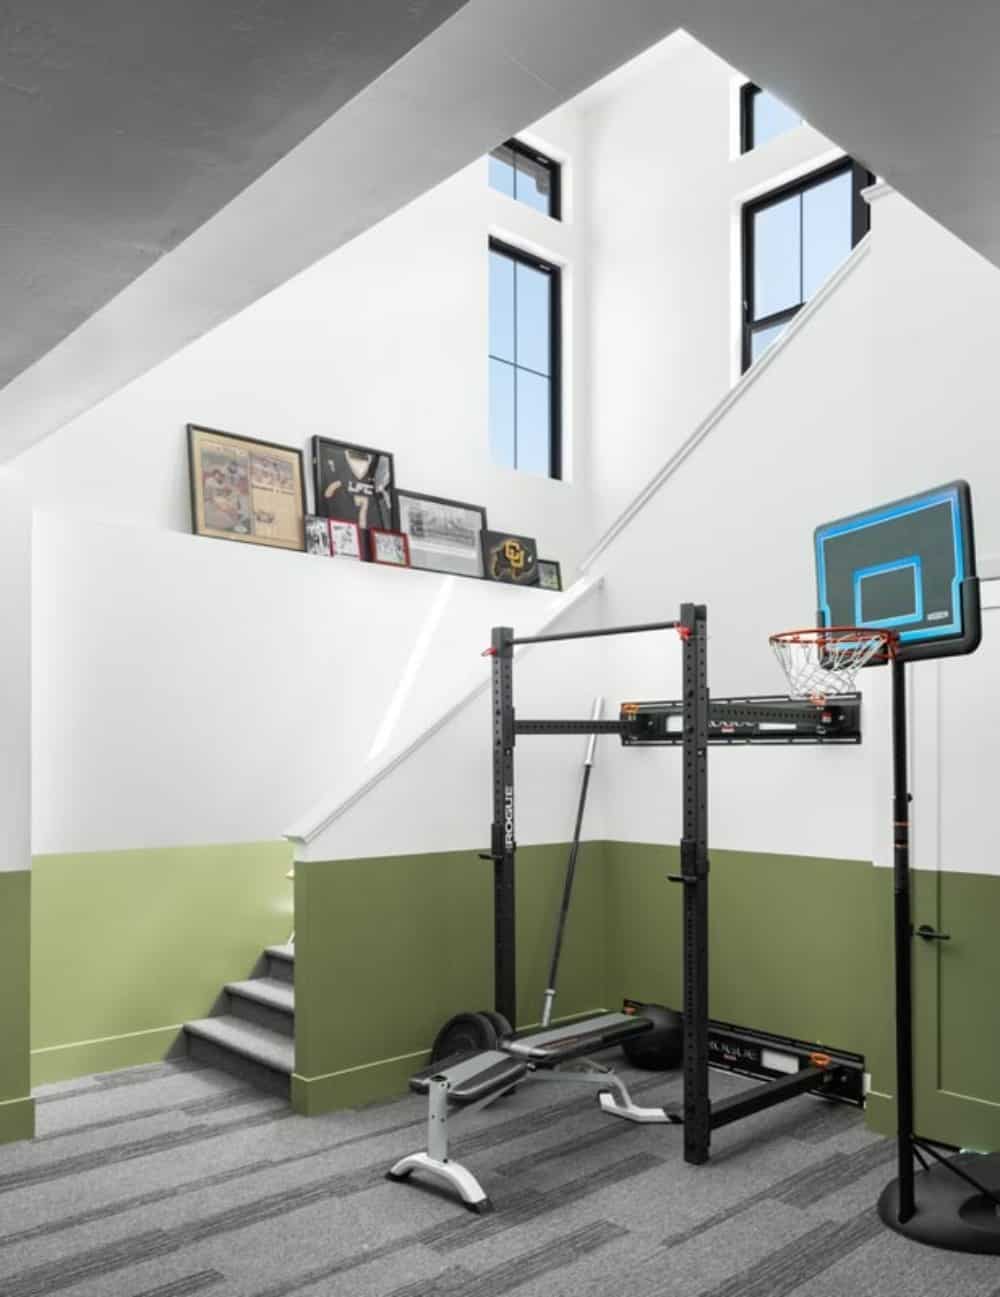 家庭健身房位于地下室楼梯的对面。